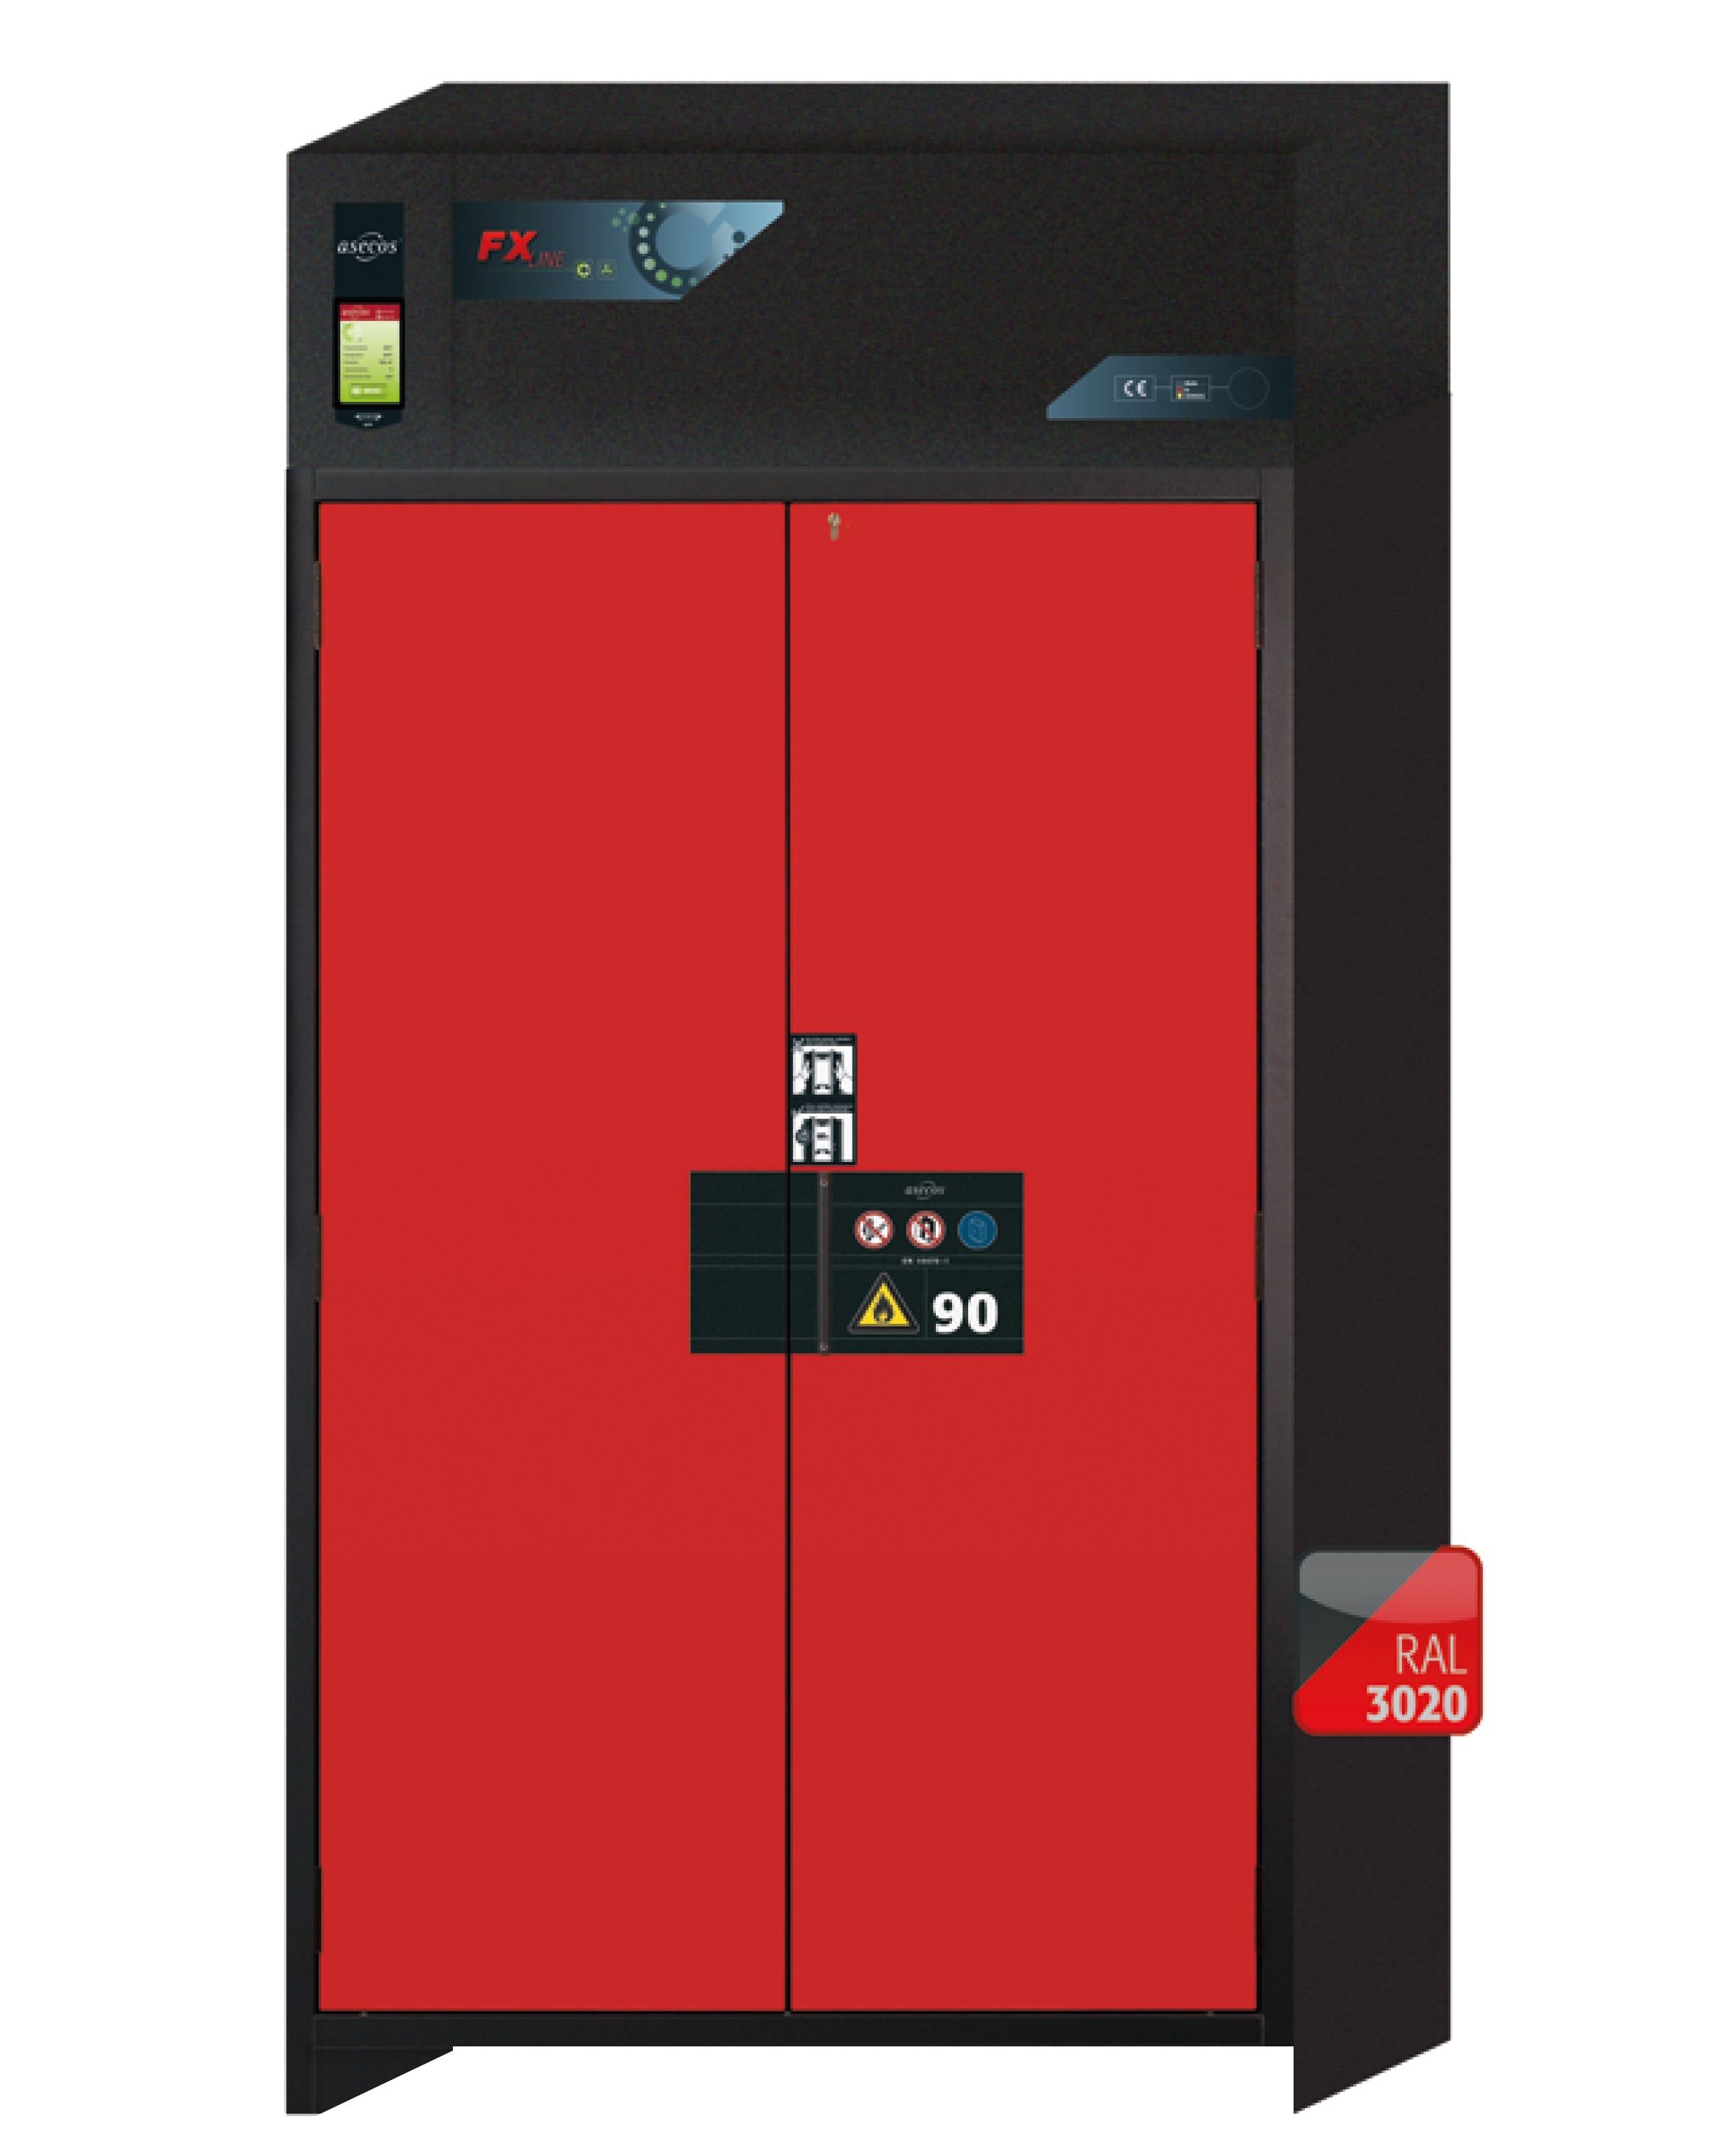 Armoire de filtration d'air de recirculation de type 90 FX-PEGASUS-90 modèle FX90.229.120.WDAC en rouge signalisation RAL 3020 avec 3x pieds de plateau standard (polypropylène)